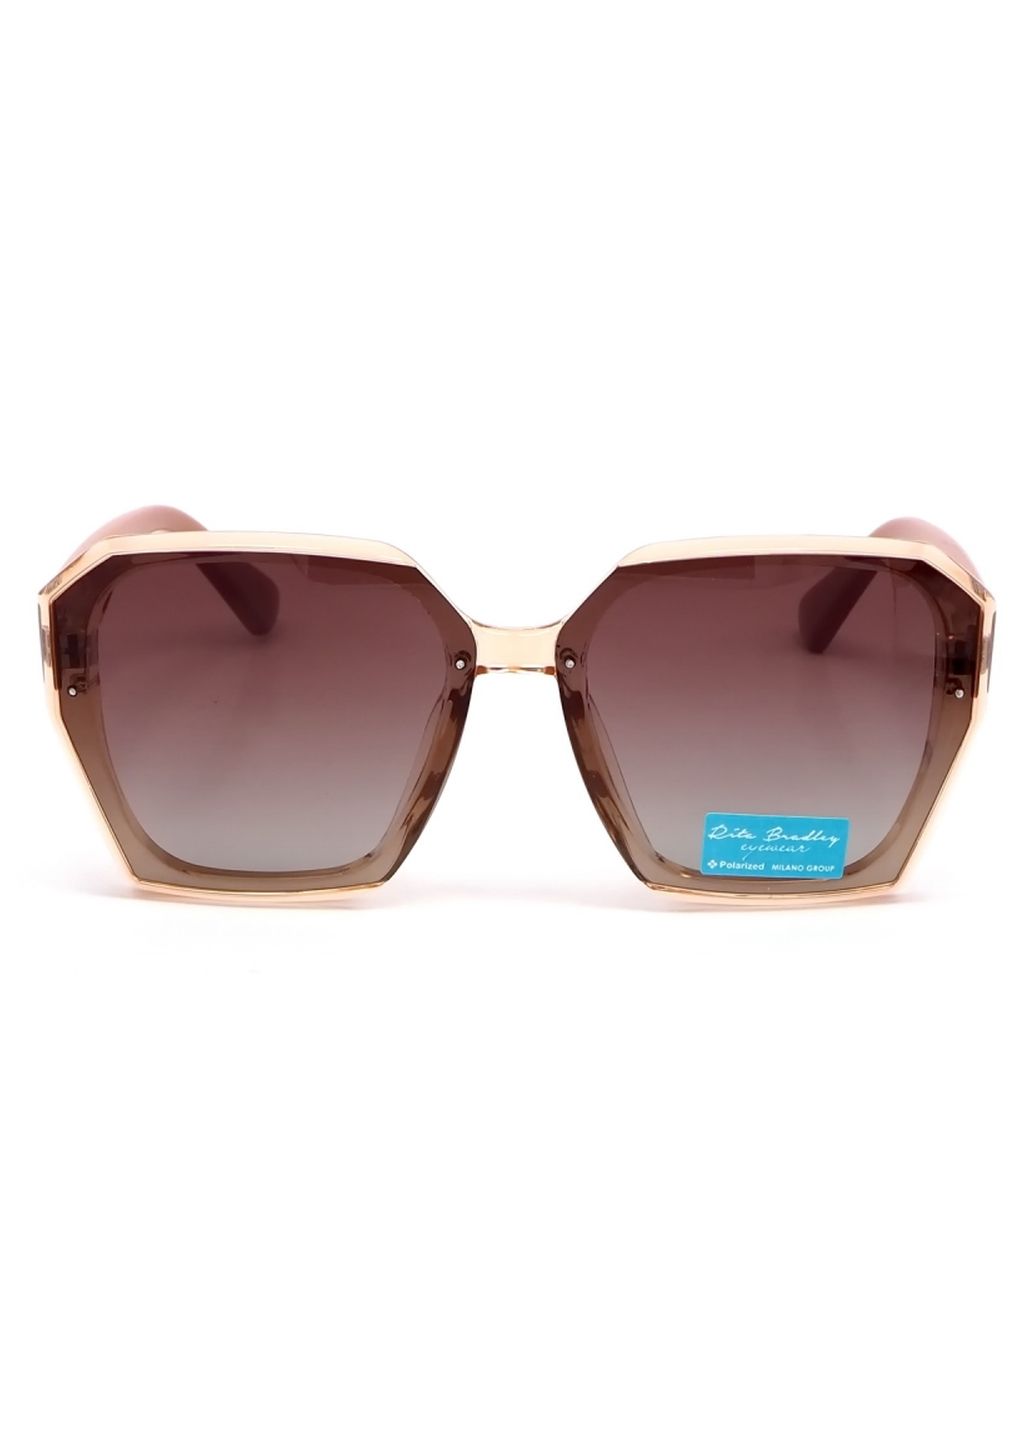 Купить Женские солнцезащитные очки Rita Bradley с поляризацией RB721 112031 в интернет-магазине